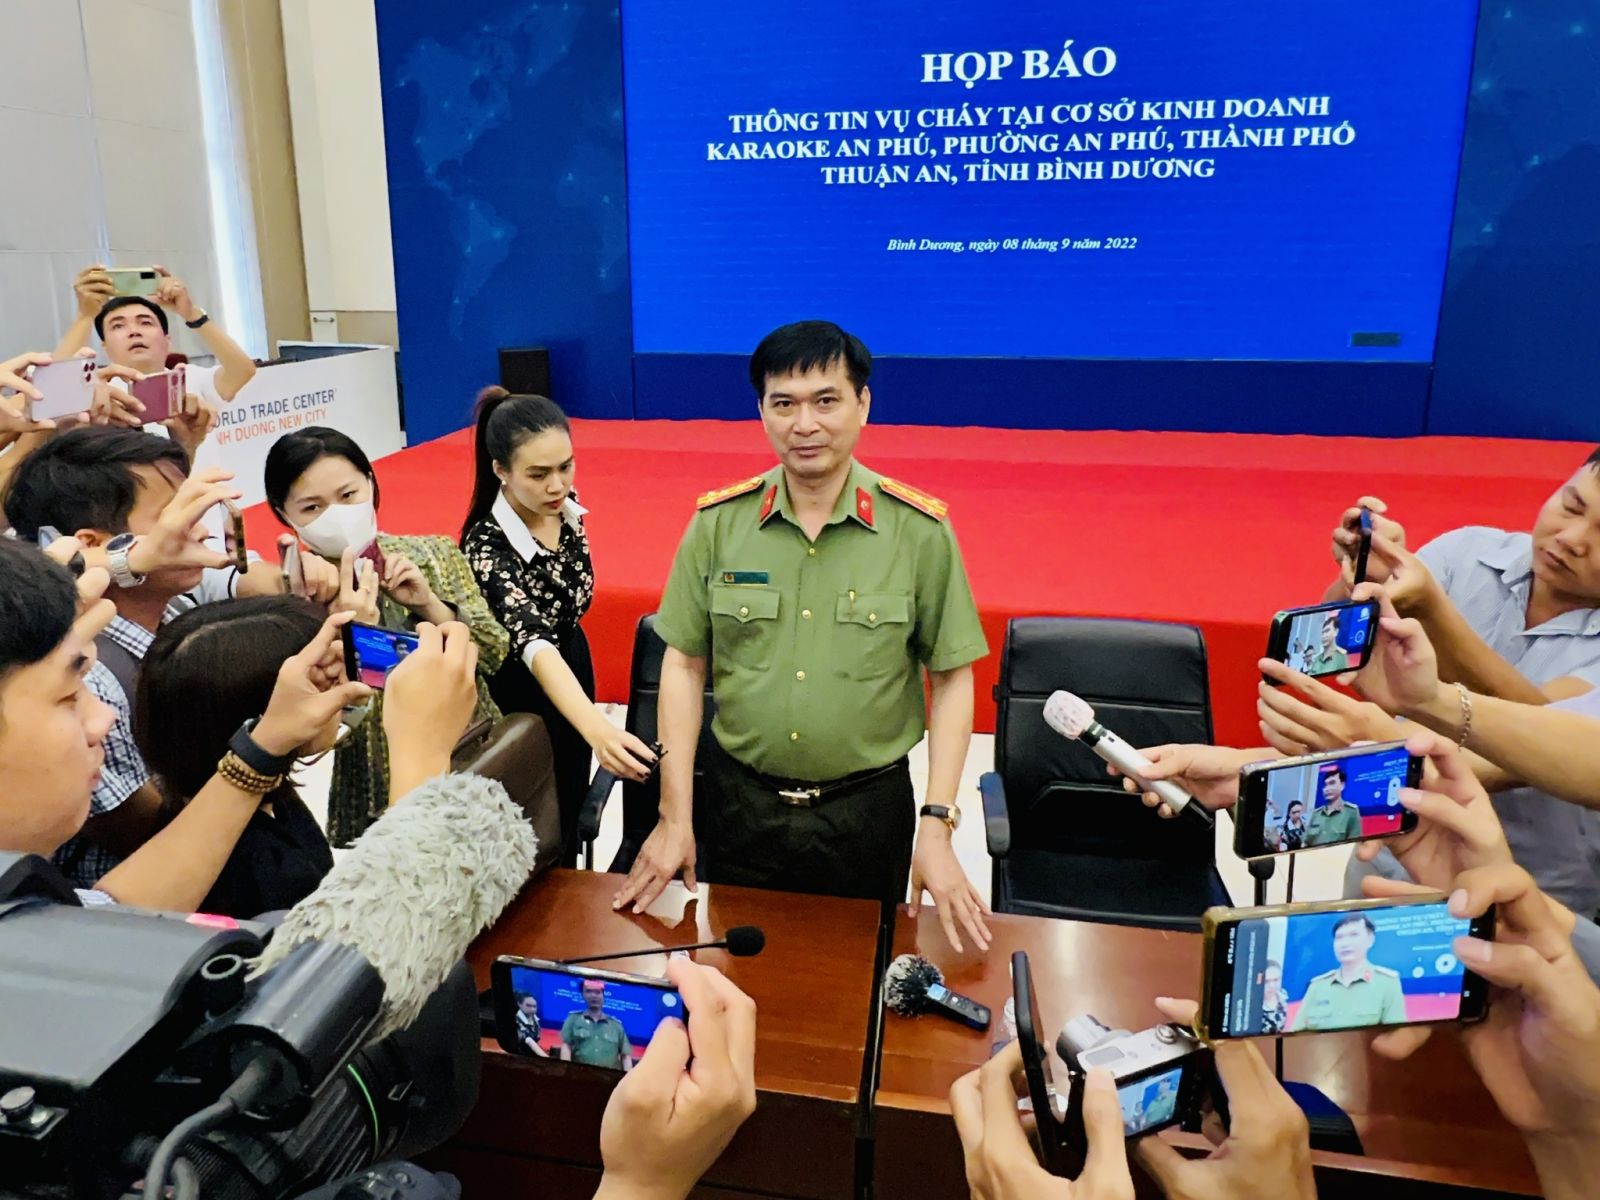 Đại tá Trịnh Ngọc Quyên trả lời báo chí sau cuộc họp báo.  ĐỖ TRƯỜNG